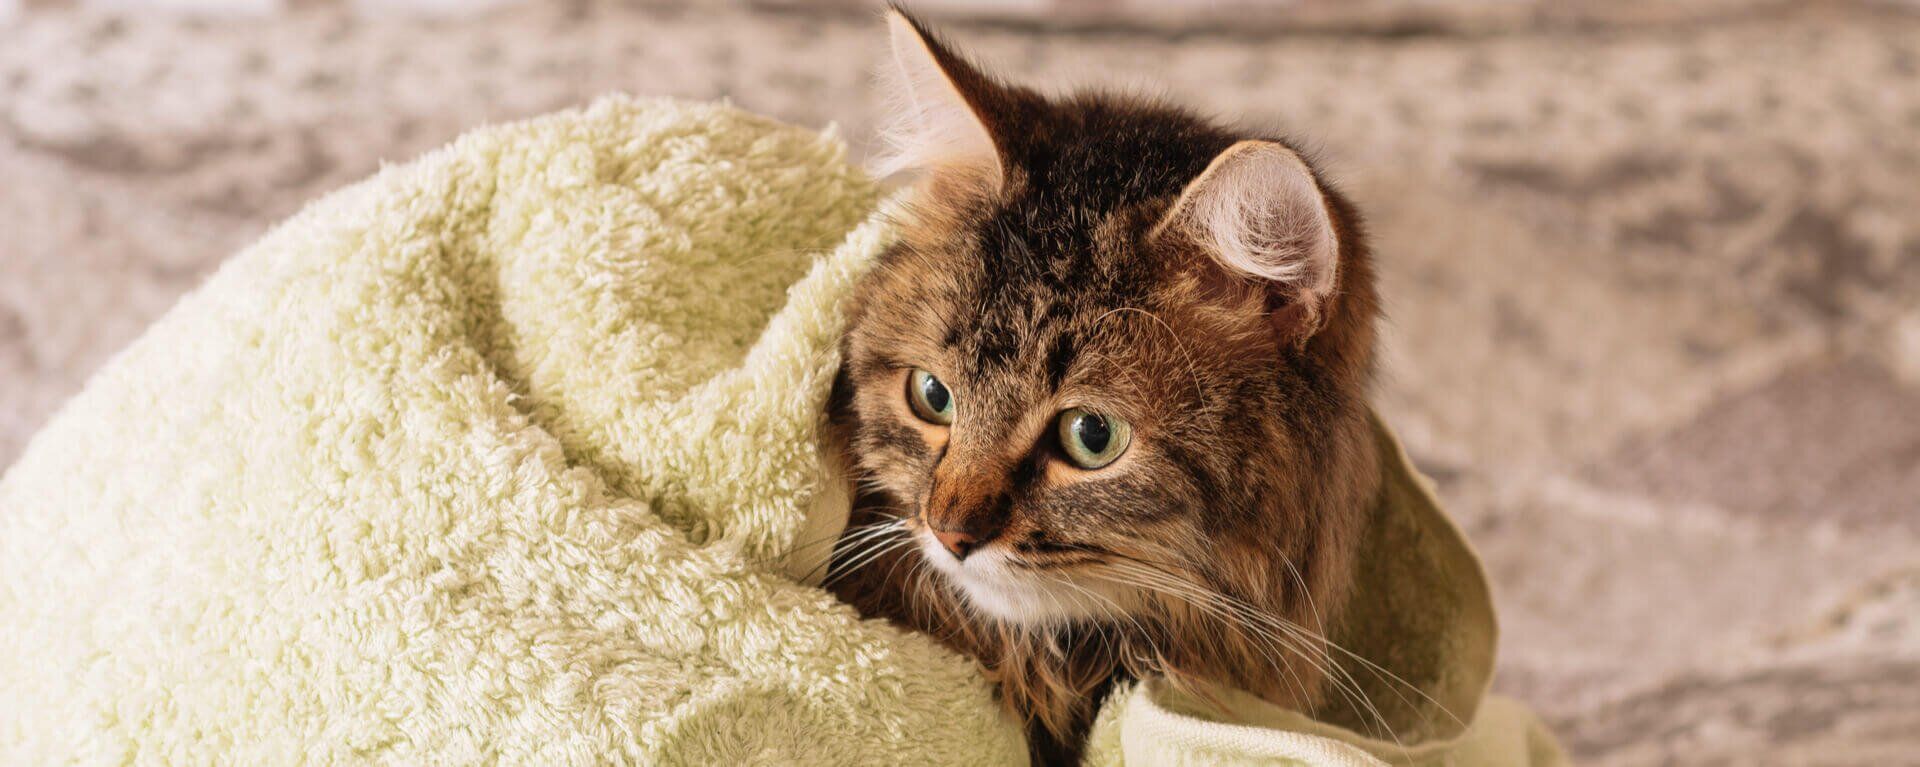 Как мыть кошку правильно: советы по купанию кошки в домашних условиях